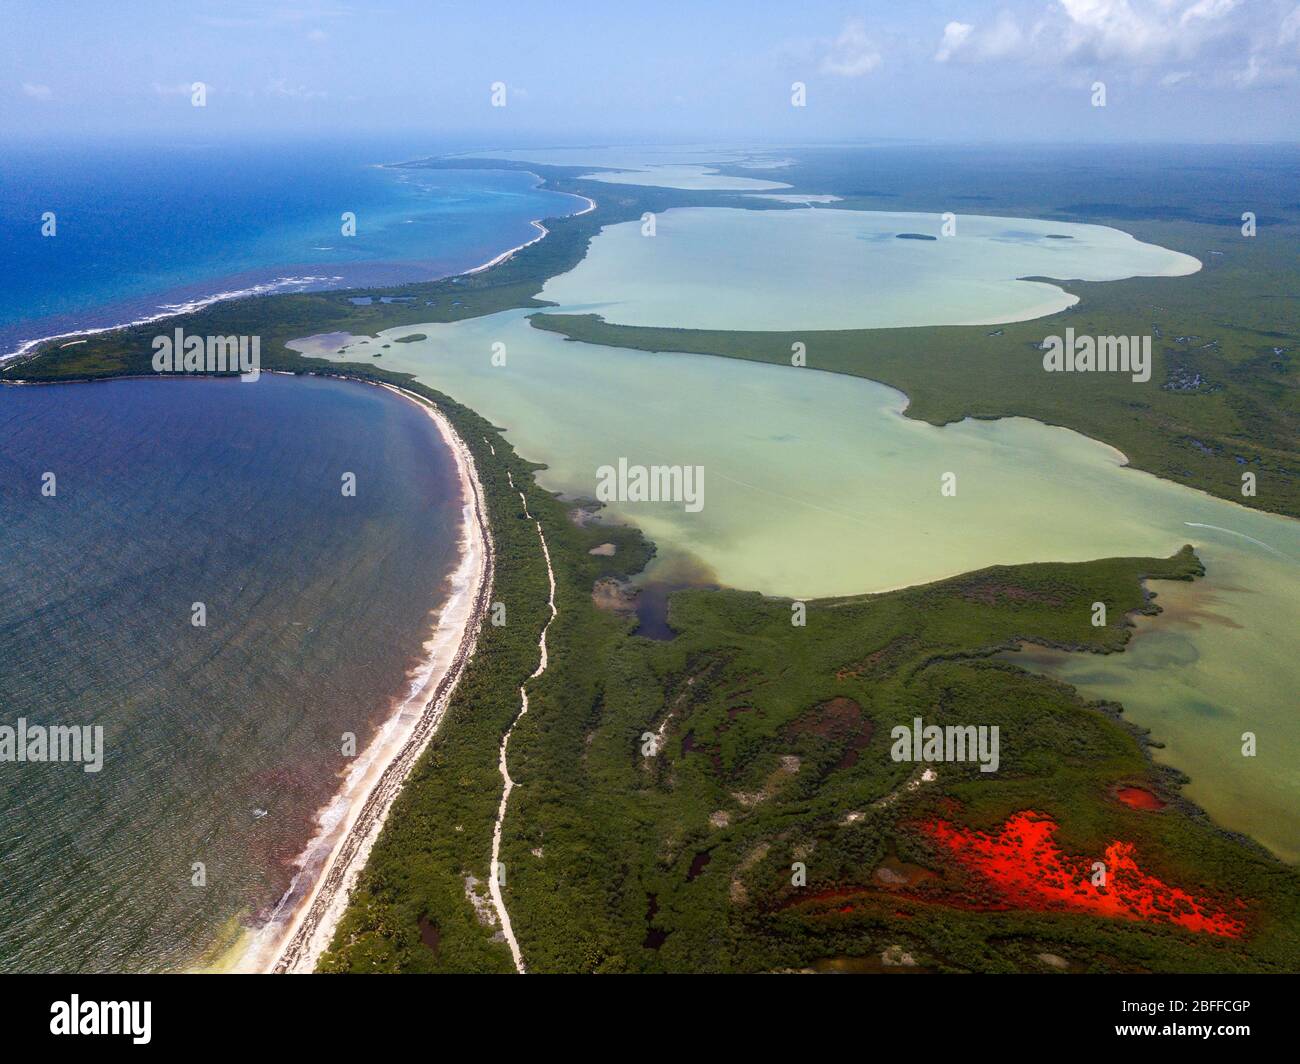 Vue aérienne de la réserve Punta Allen Sian Ka'an, péninsule du Yucatan, Mexique. Lagon rouge près du pont Boca Paila. Dans la langue des peuples mayas qui Banque D'Images